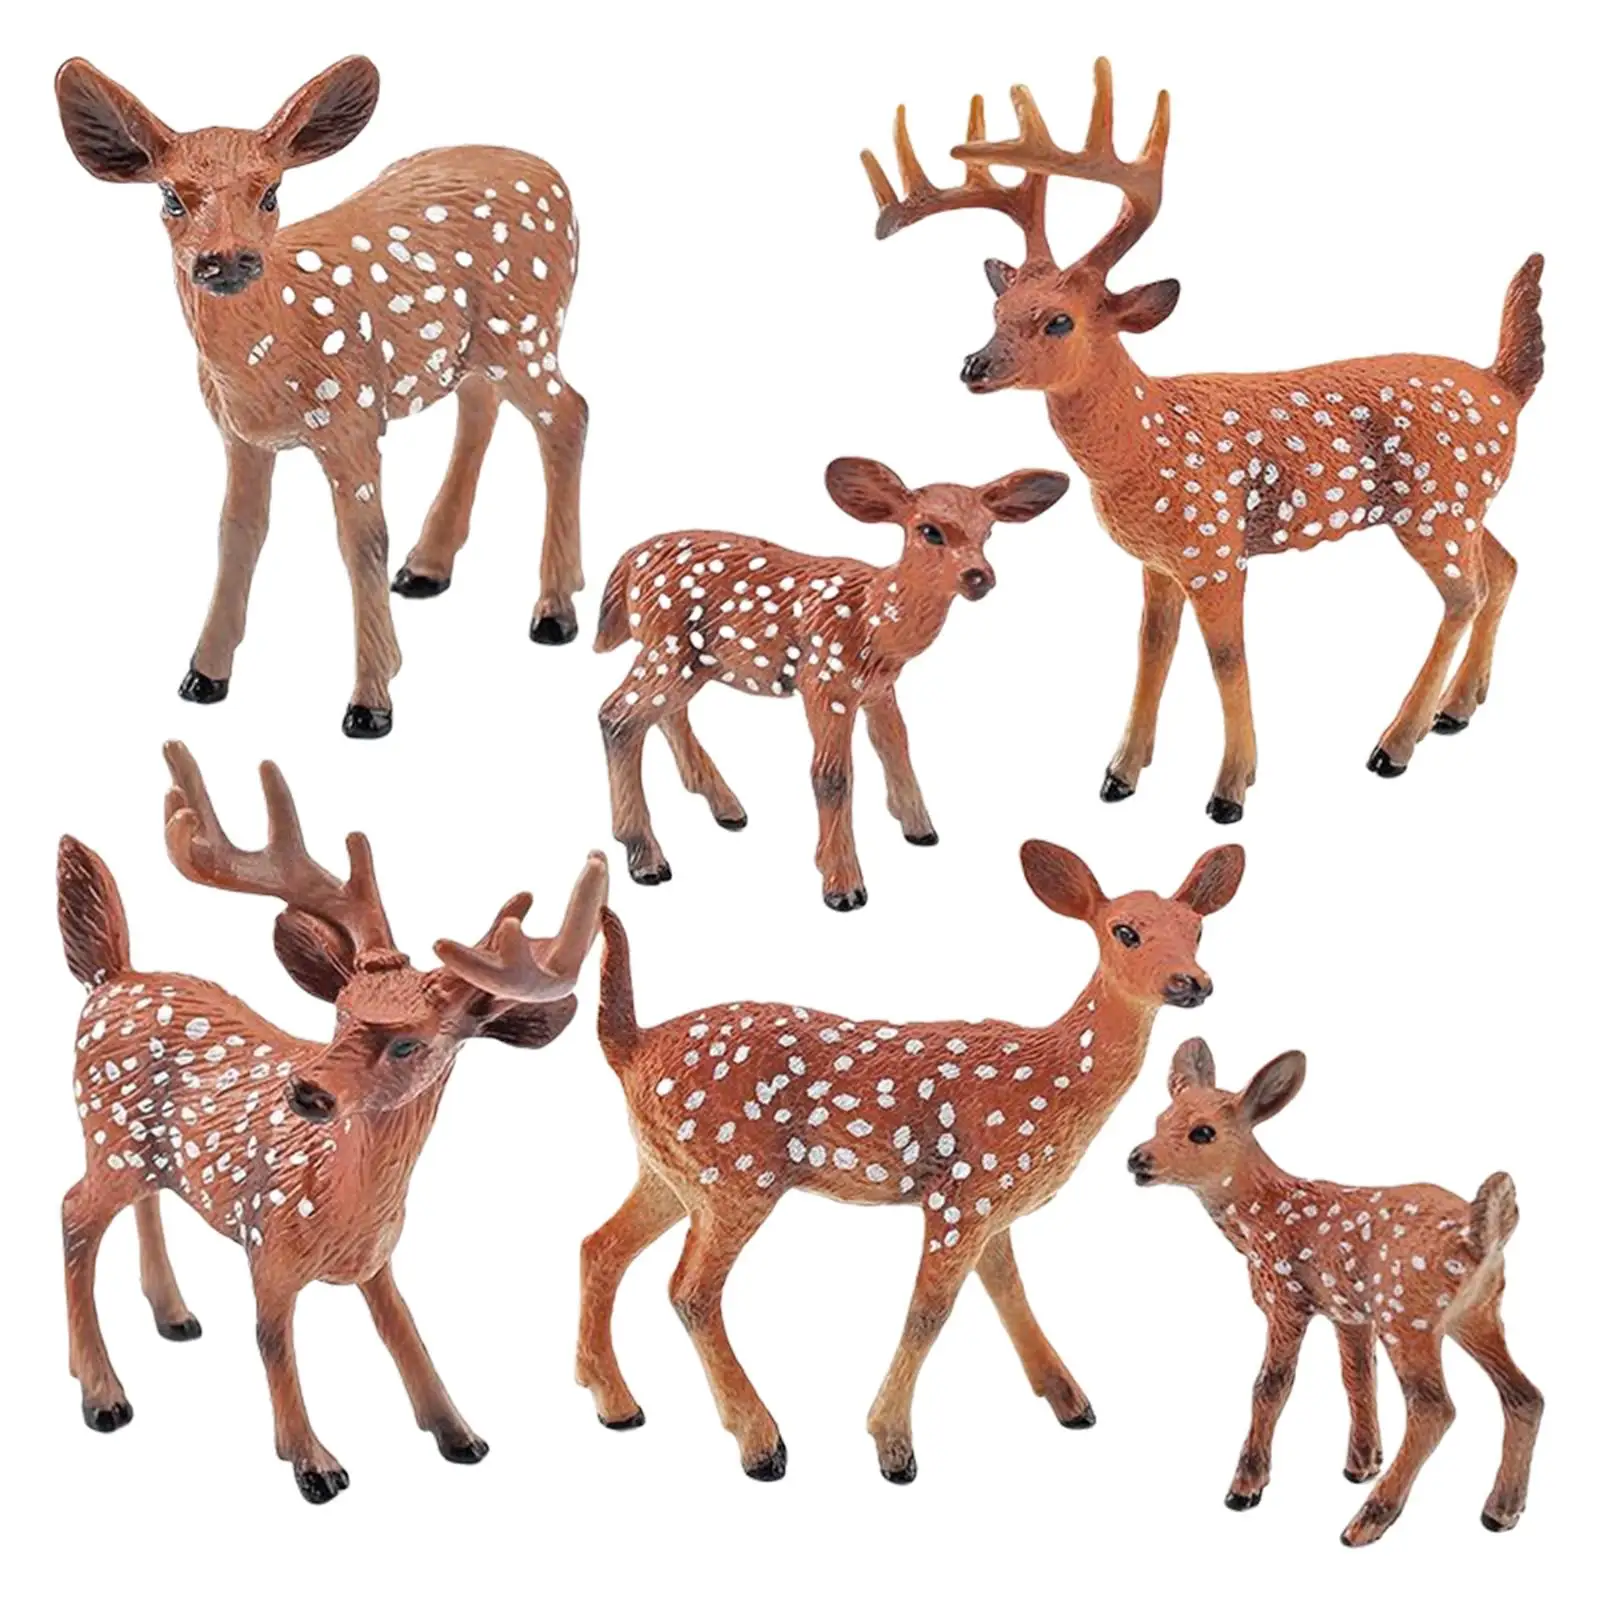 6 Pieces Animal Reindeer Model Figures Plastic for Teaching Prop